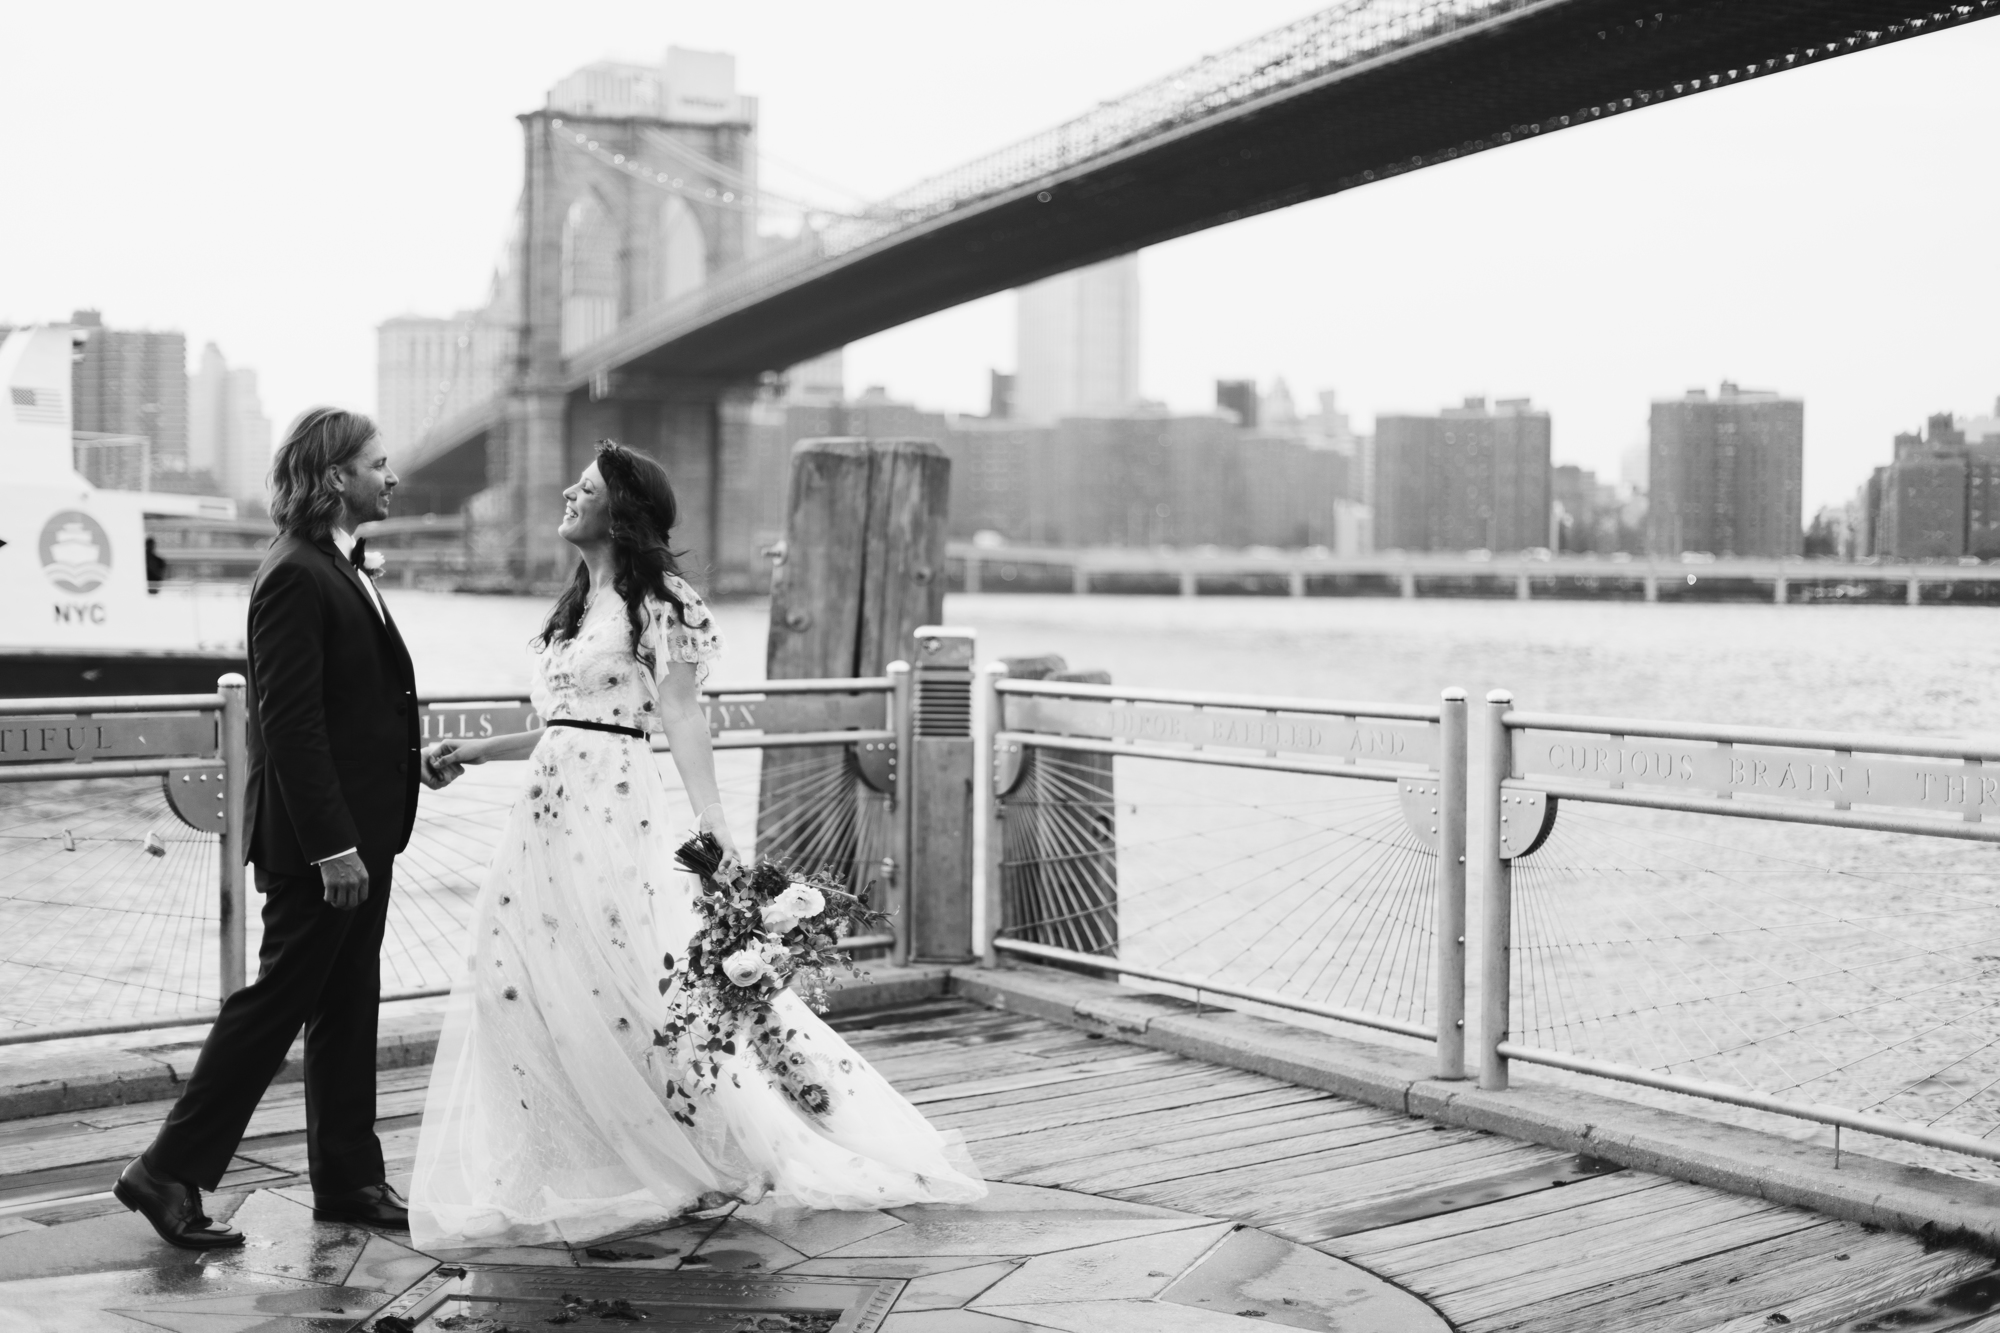 Brooklyn Bridge Park wedding photos on a rainy day